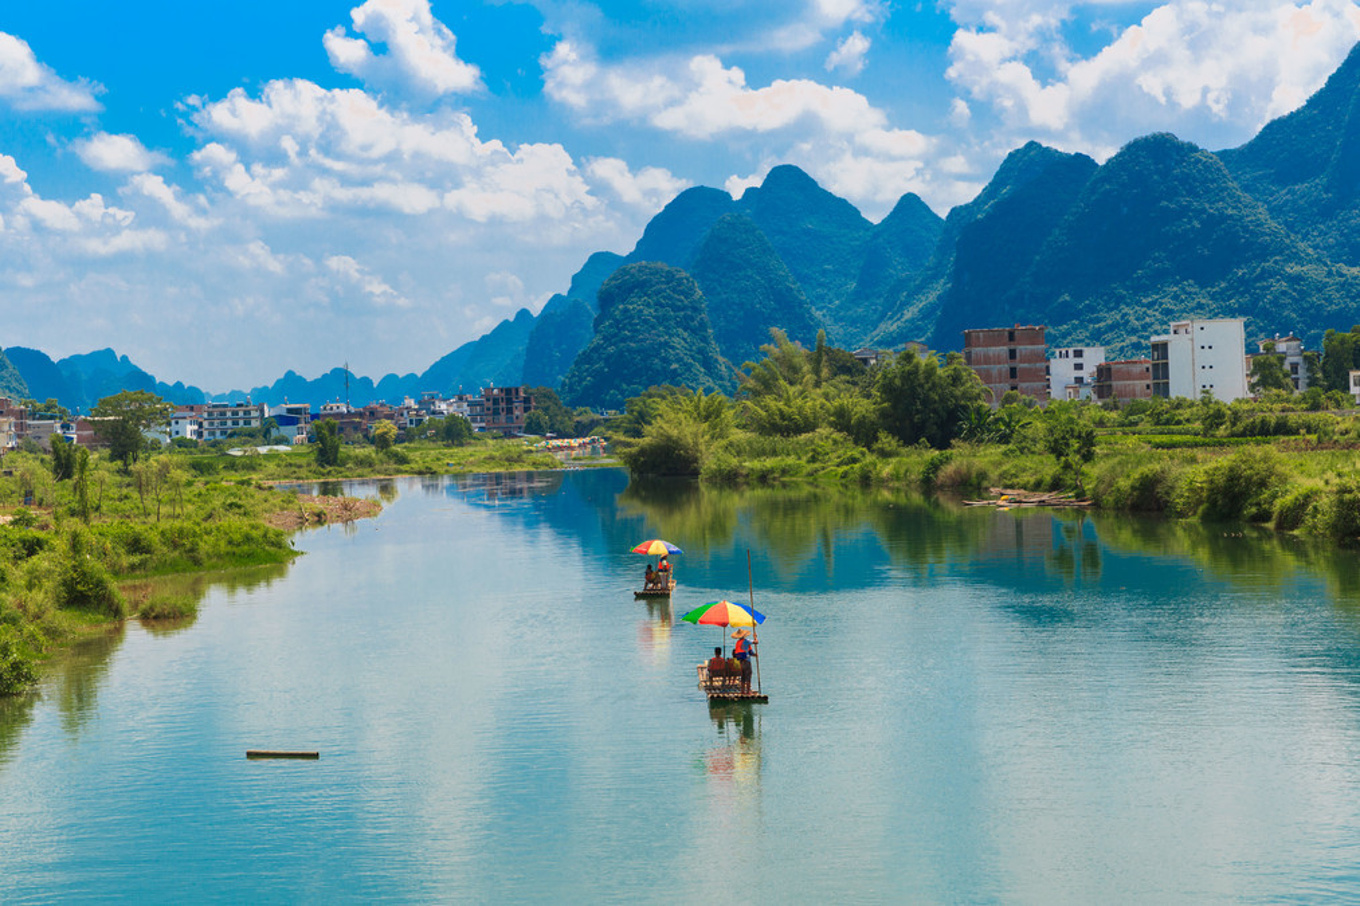 去桂林旅游的最佳时间 （季节分析和线路推荐） | 说明书网